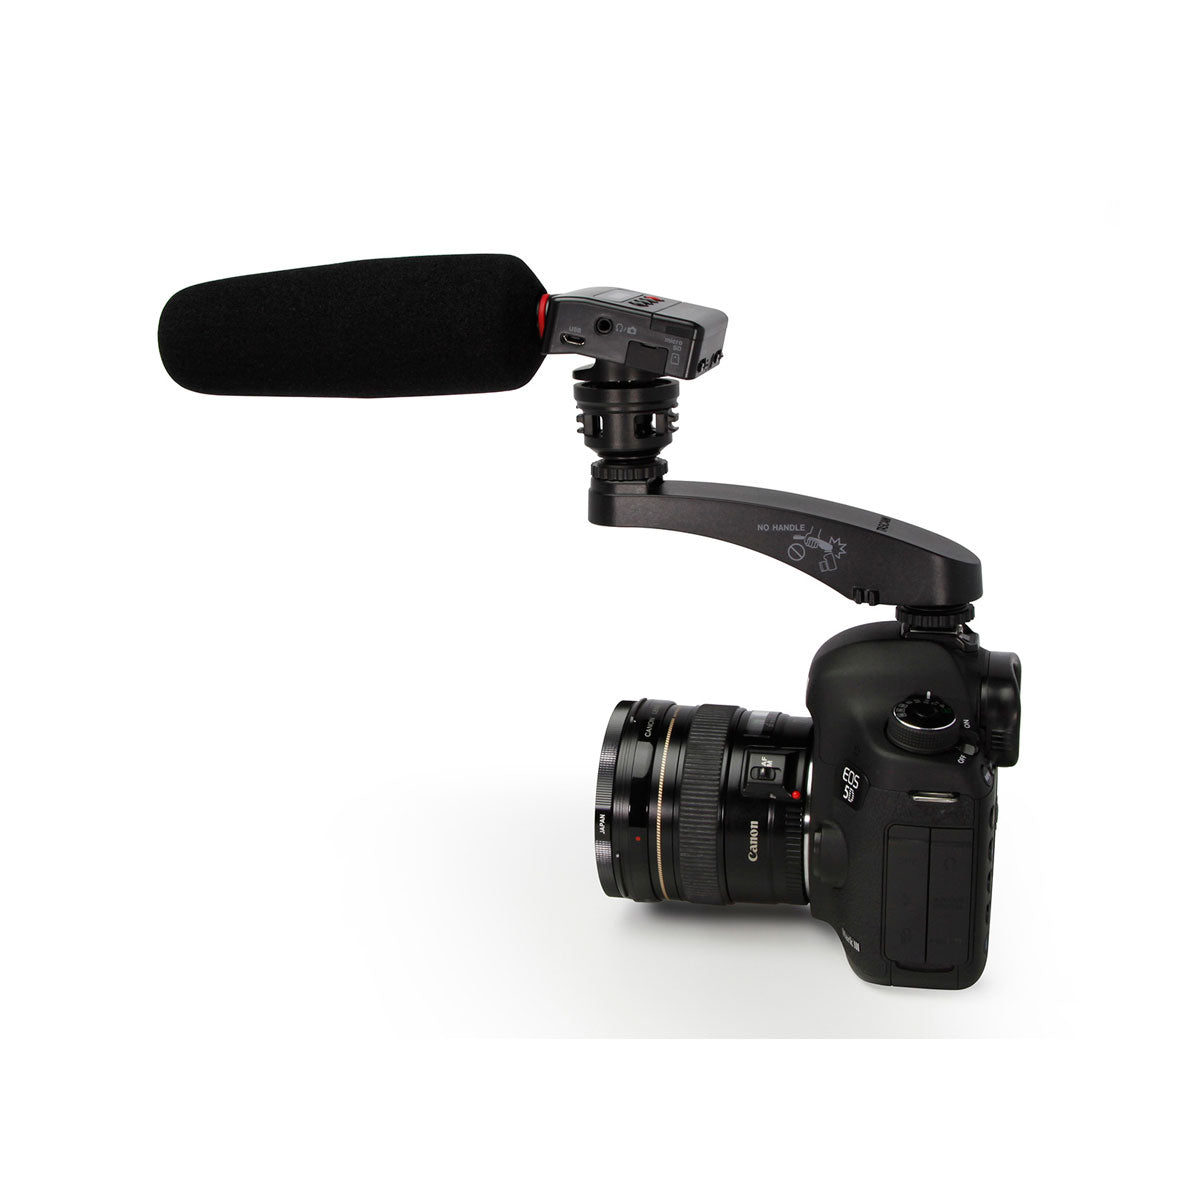 Grabadora Tascam Para Camaras Dlsr con Microfono Shotgun Dr-10sg